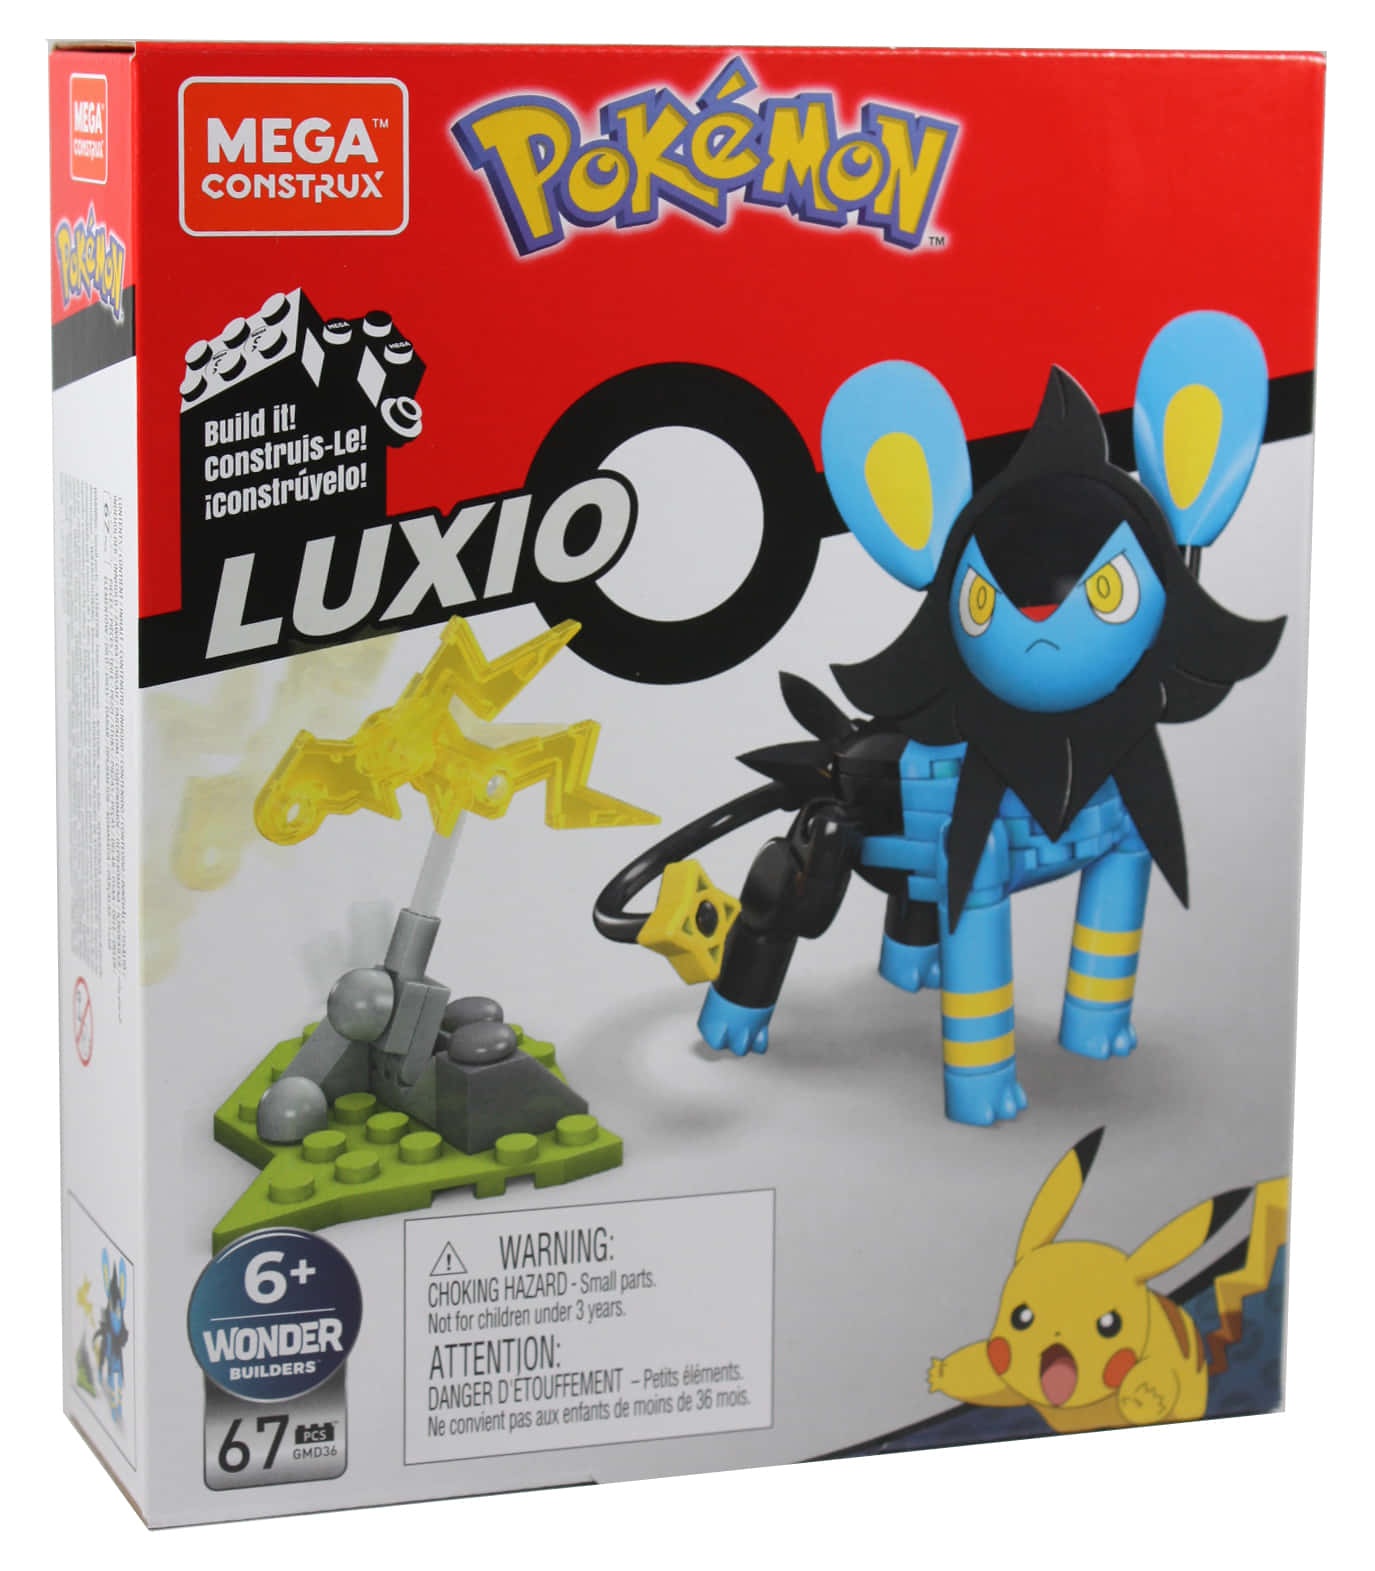 Megaconstrux Pokemon Luxio Box - Megabyggsats Med Luxio Från Pokemon! Perfekt För Din Dators Eller Mobiltelefons Skrivbordsbakgrund. Visa Upp Din Kärlek För Pokemon Med Denna Fantastiska Bakgrundsbild. Wallpaper